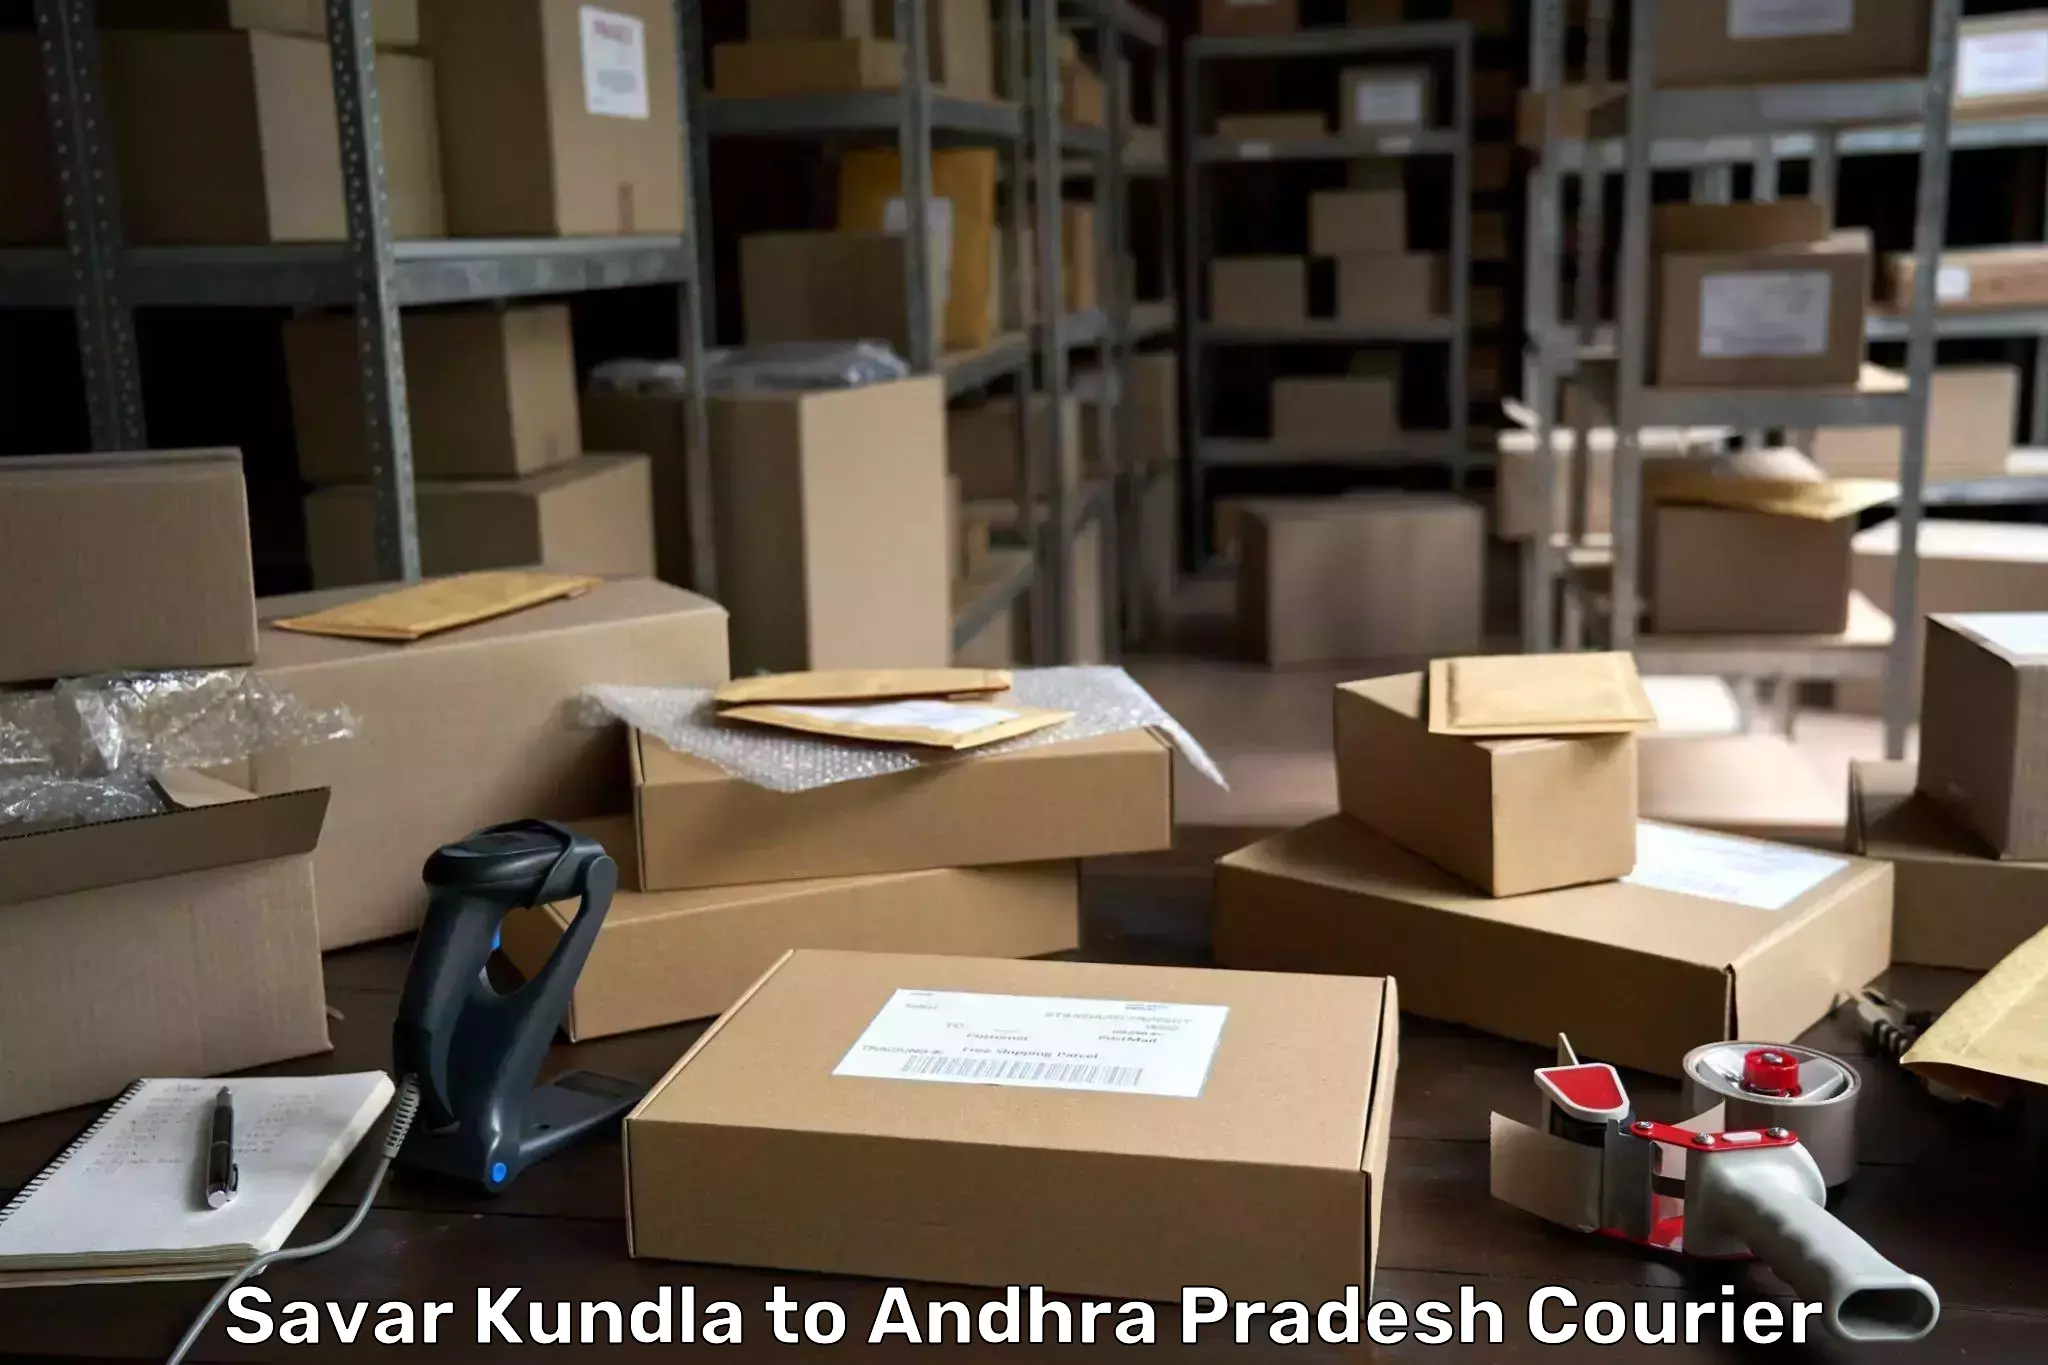 Courier service efficiency Savar Kundla to Sri Venkateswara Institute of Medical Sciences Tirupati